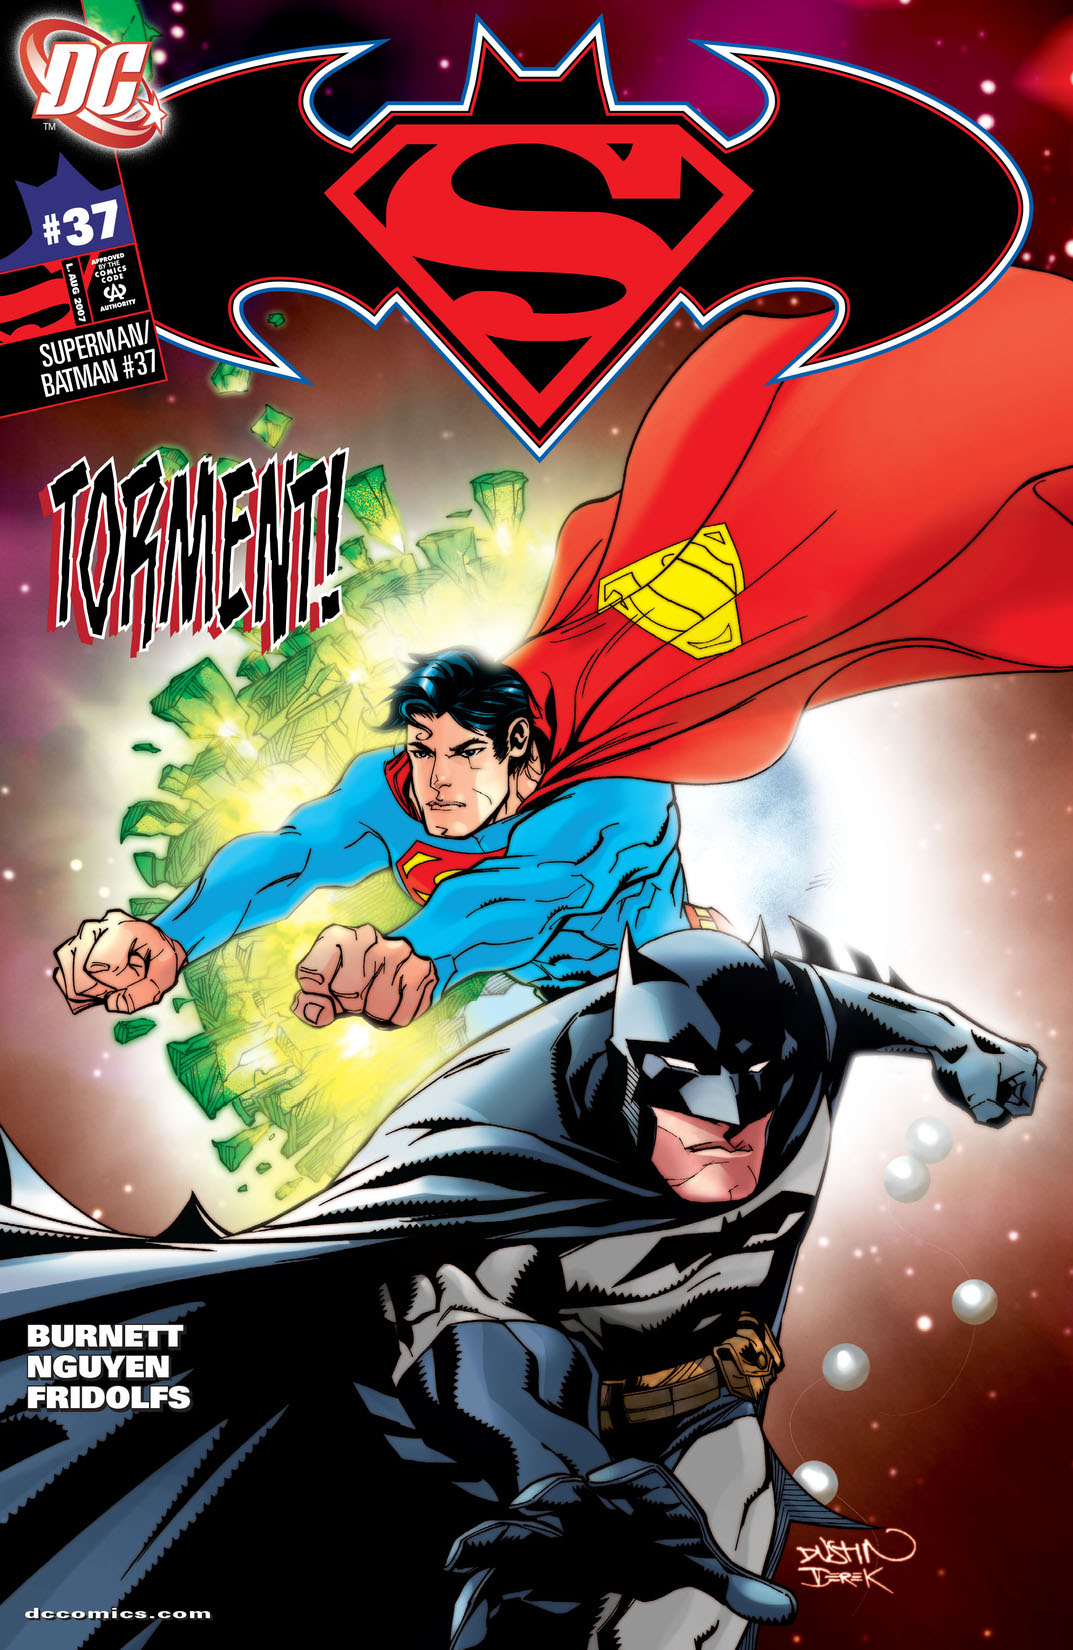 Superman/Batman #37 preview images